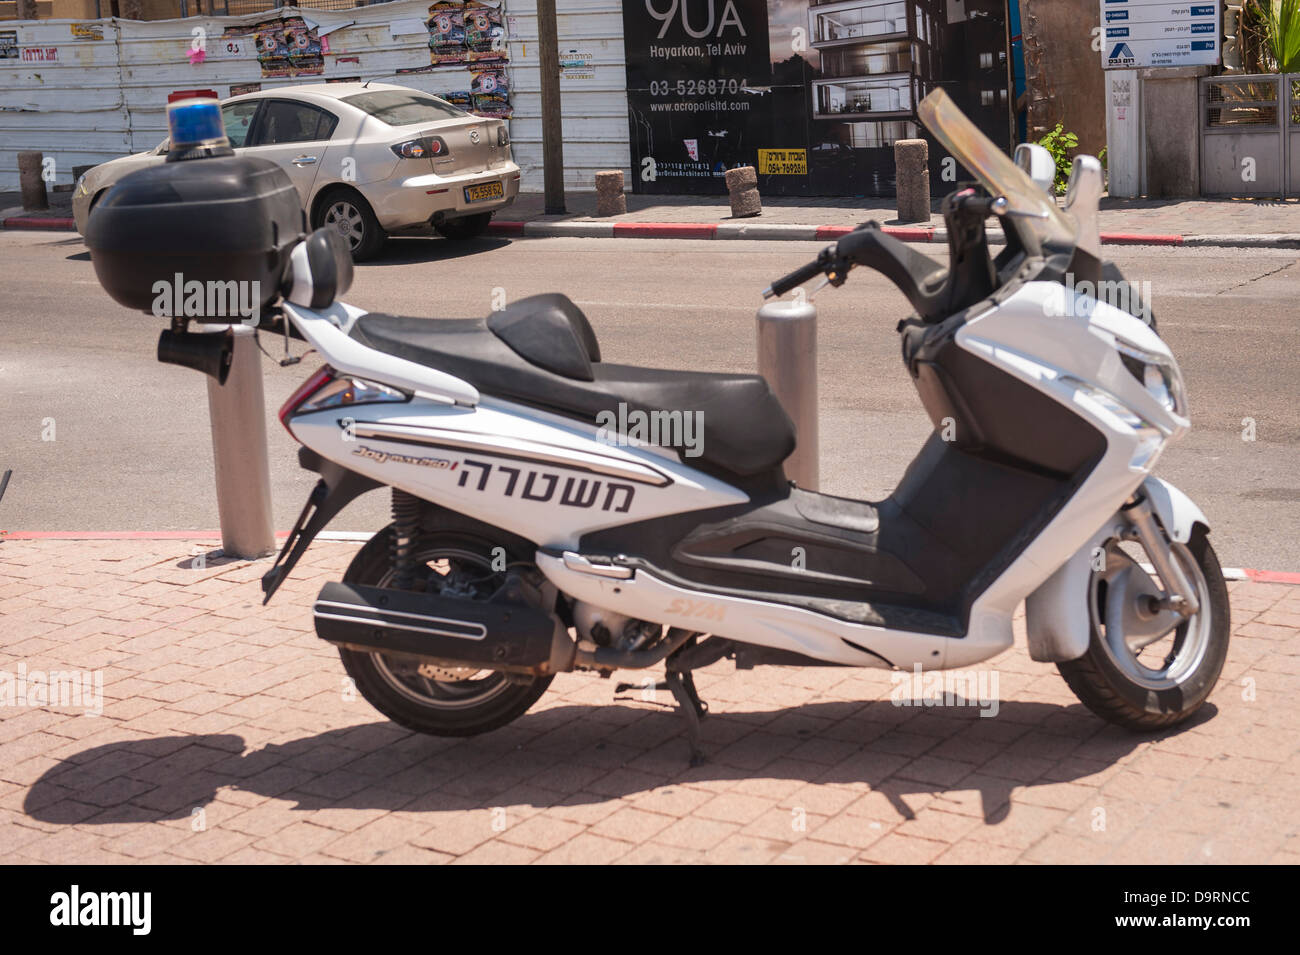 Israel Tel Aviv Polizei Motorrad Motorrad Fahrrad Zyklus Moped geparkt  Promenade street scene Gehsteig Bürgersteig Stockfotografie - Alamy